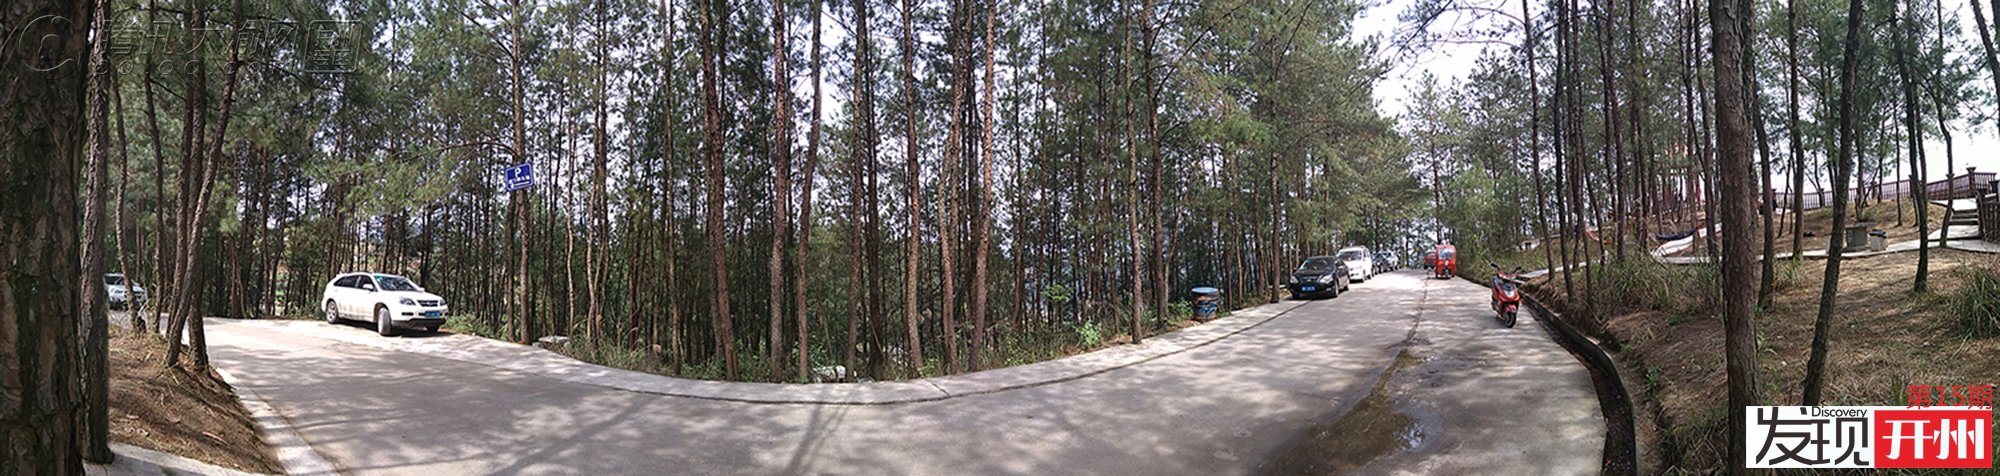 松树林全景模式.jpg